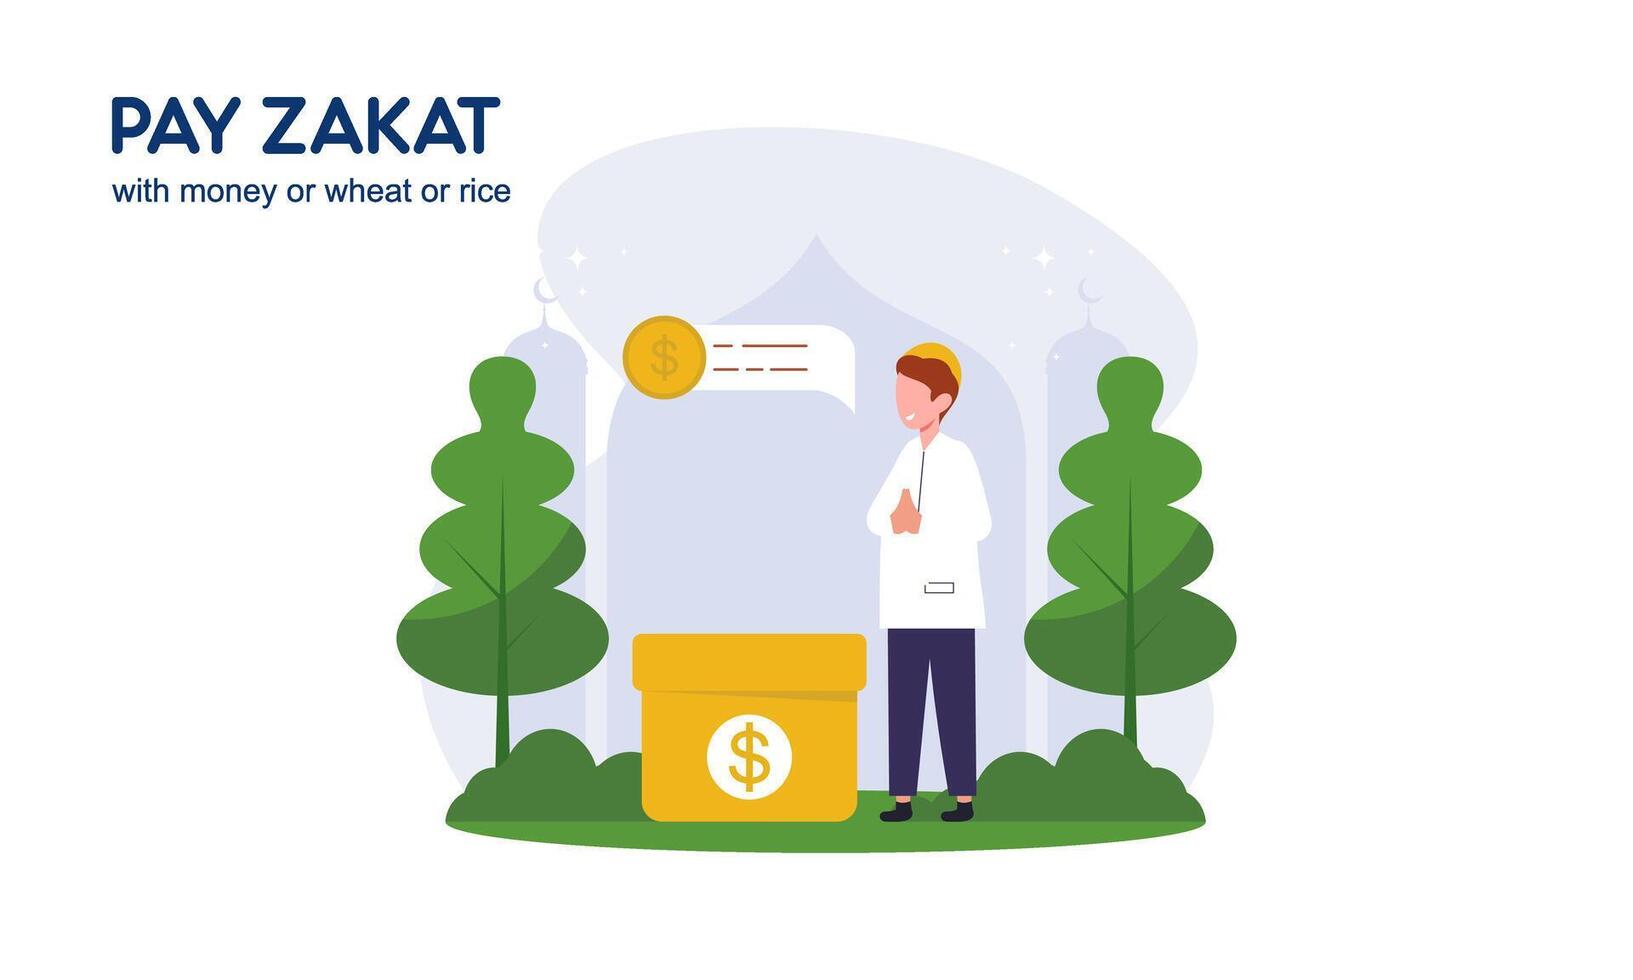 betalen zakat of online zakat toepassing voor Ramadan concept vector